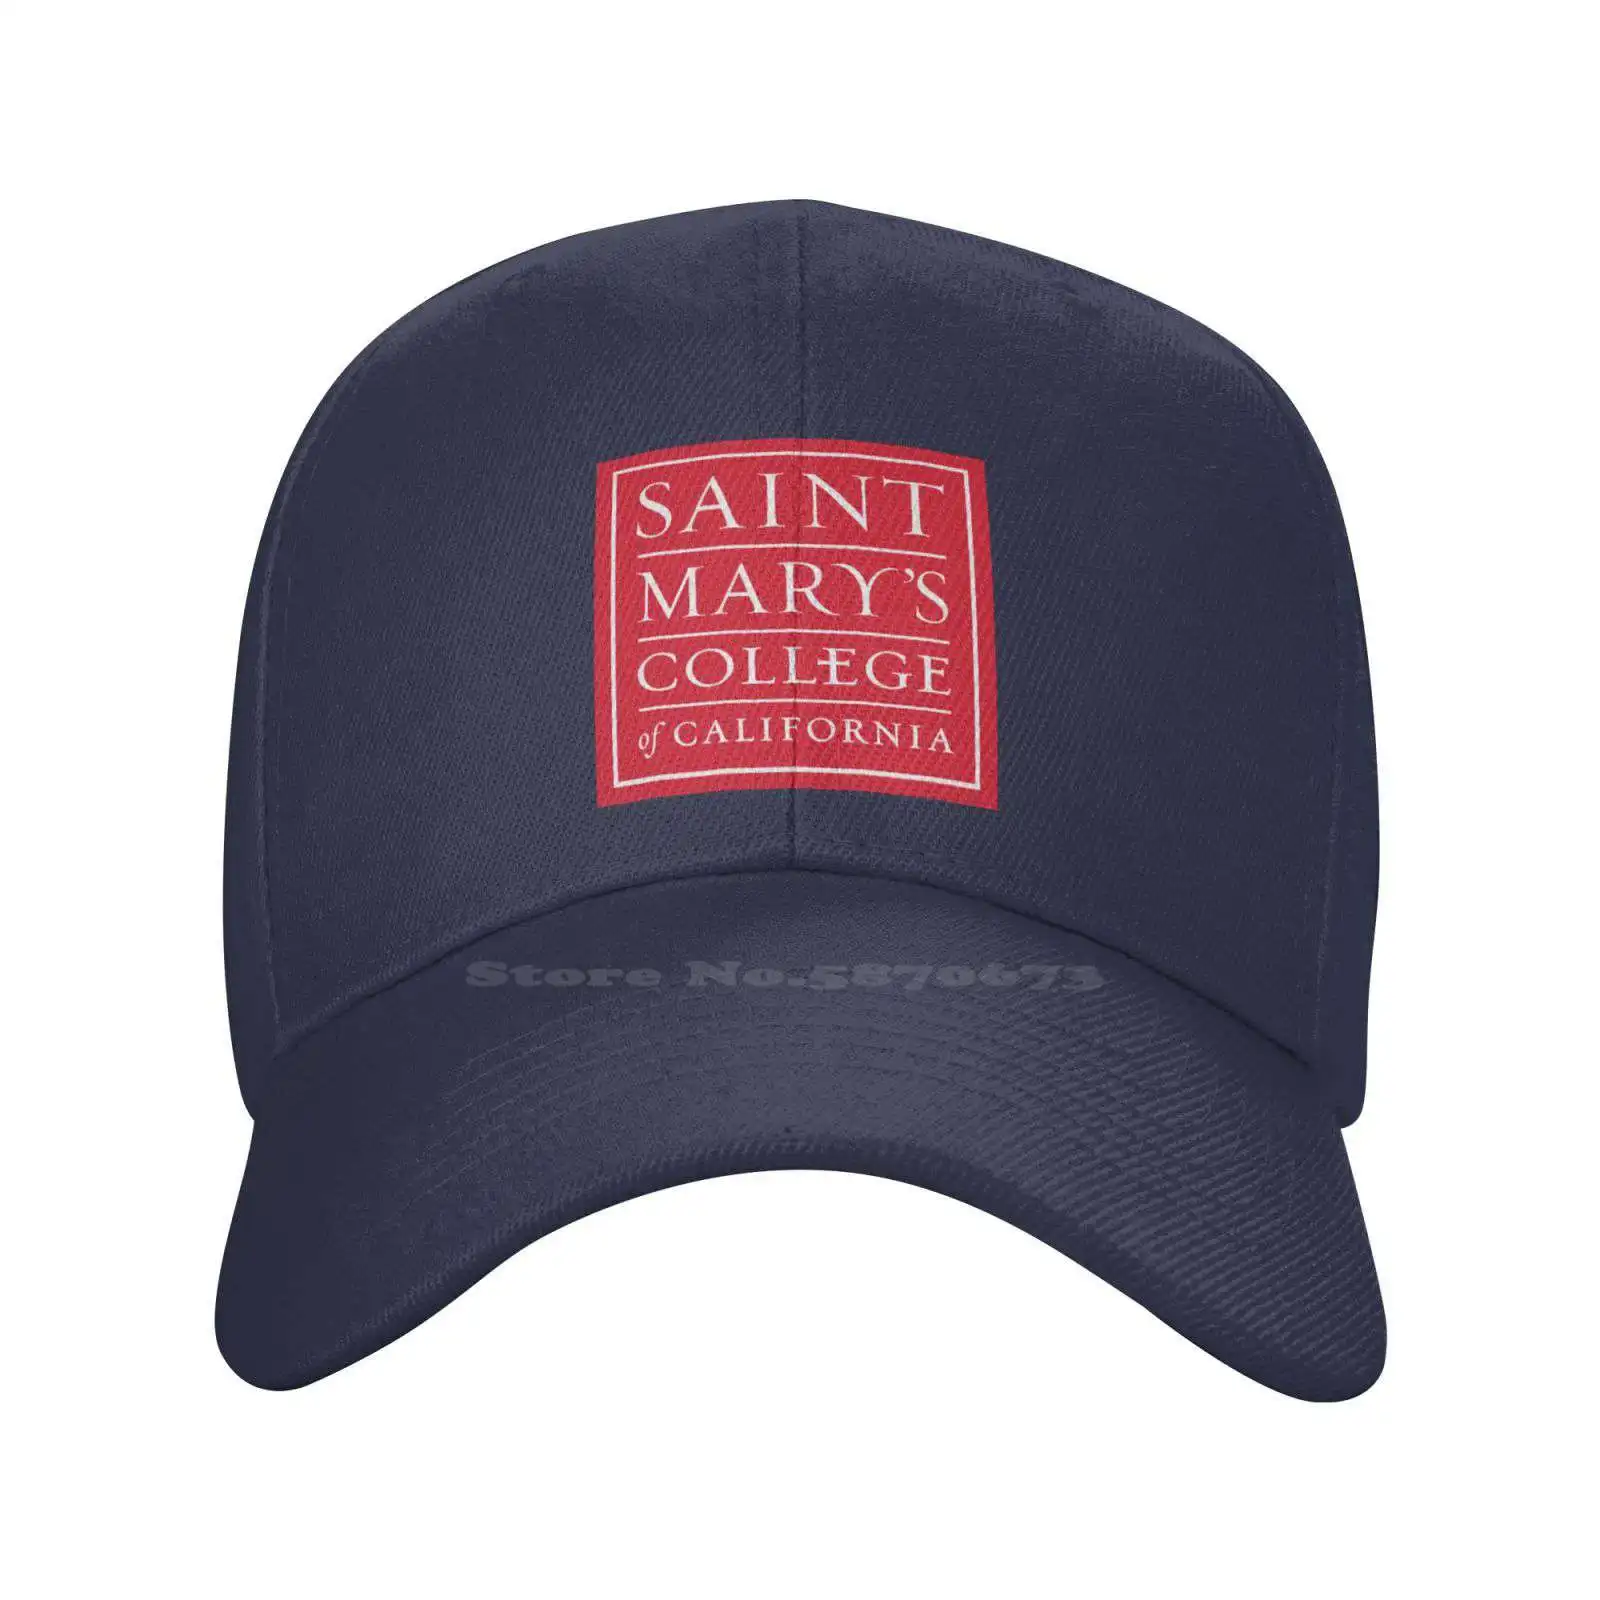 

Повседневная джинсовая бейсболка с принтом логотипа колледжа Святого Мэри Калифорнии